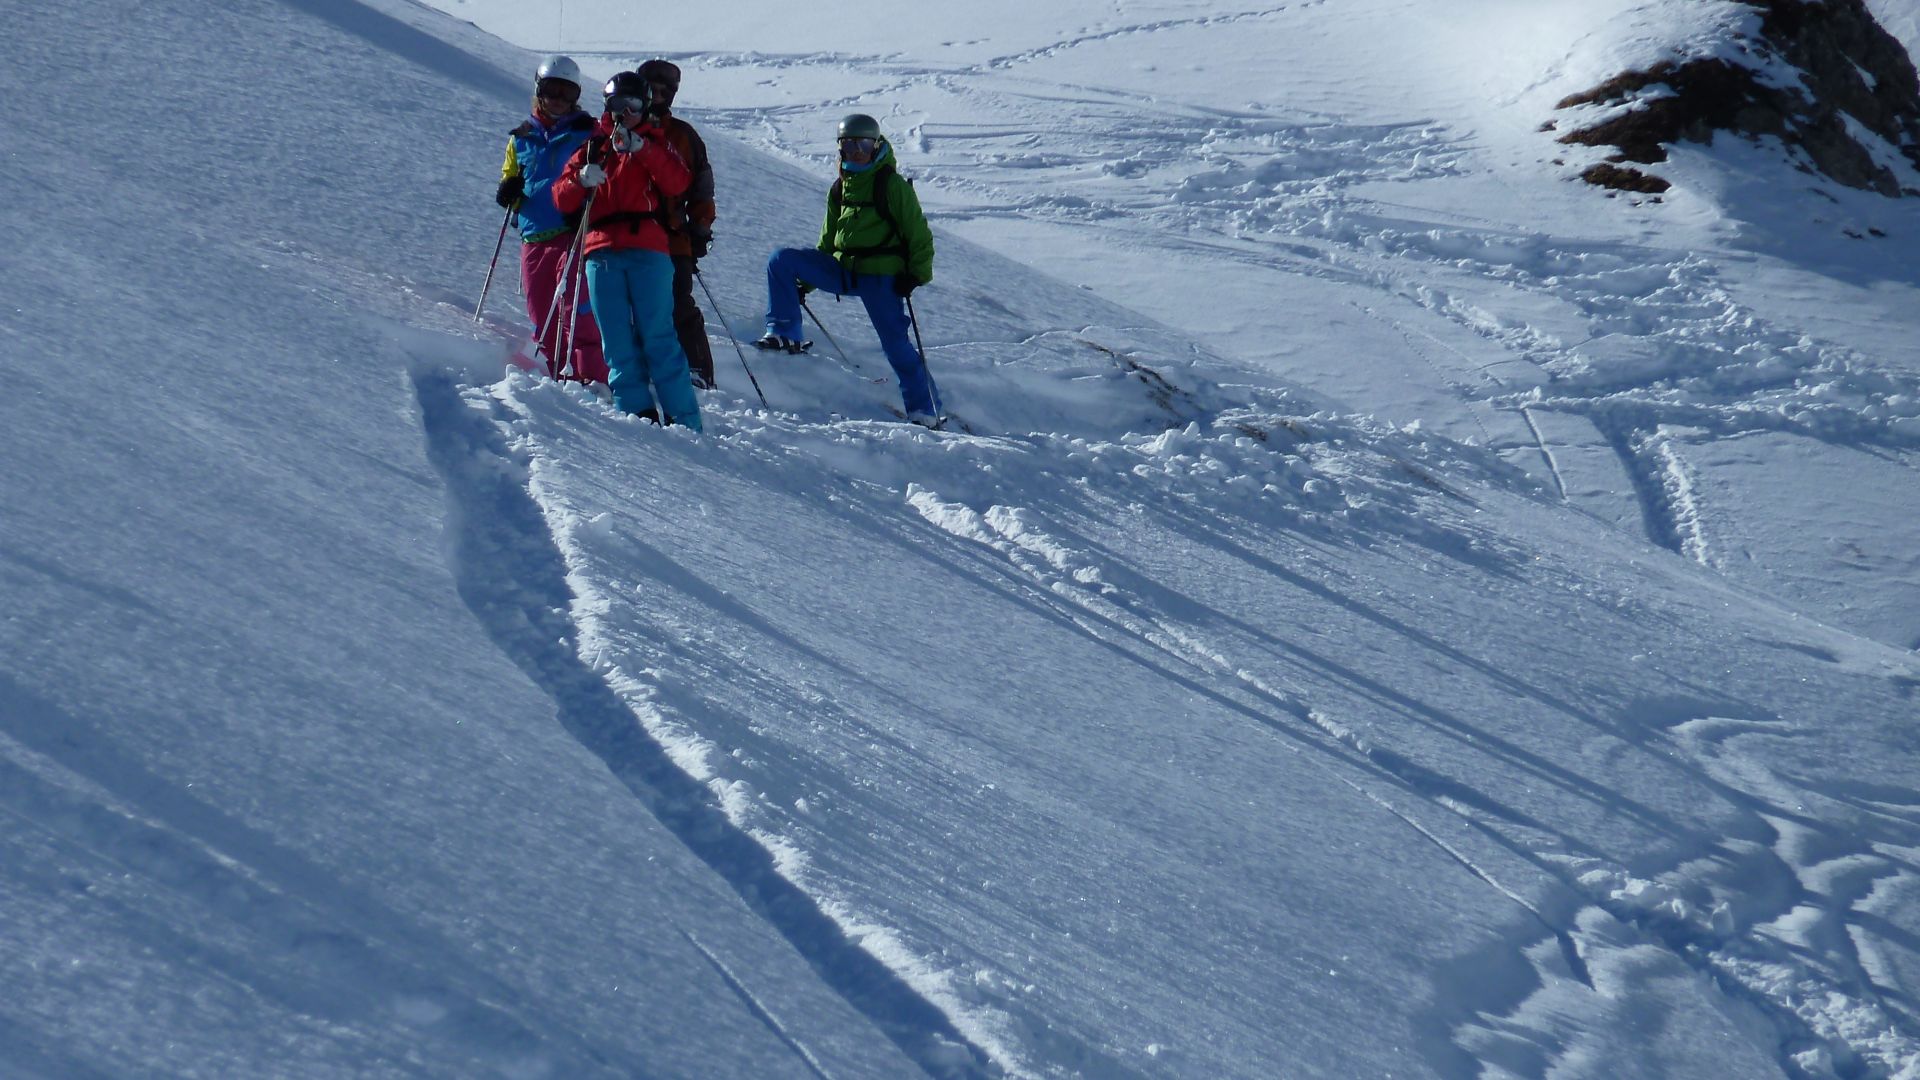 Ski, Frankreich, trois vallees, Gruppenreisen, Reisen, Snowboard, Skikurse, Kinderbetreuung, Winter,